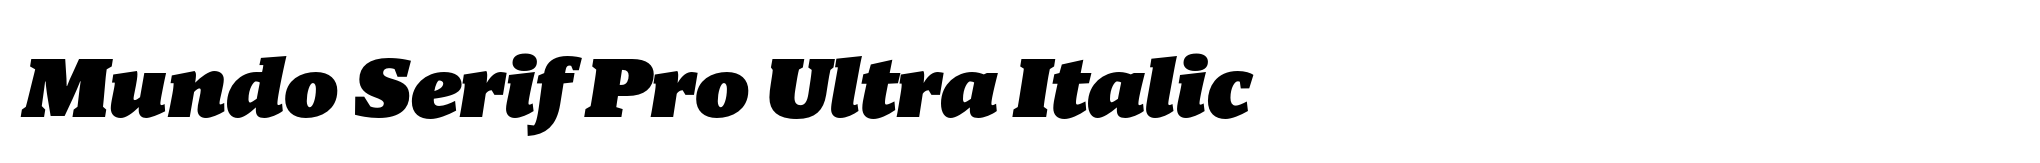 Mundo Serif Pro Ultra Italic image